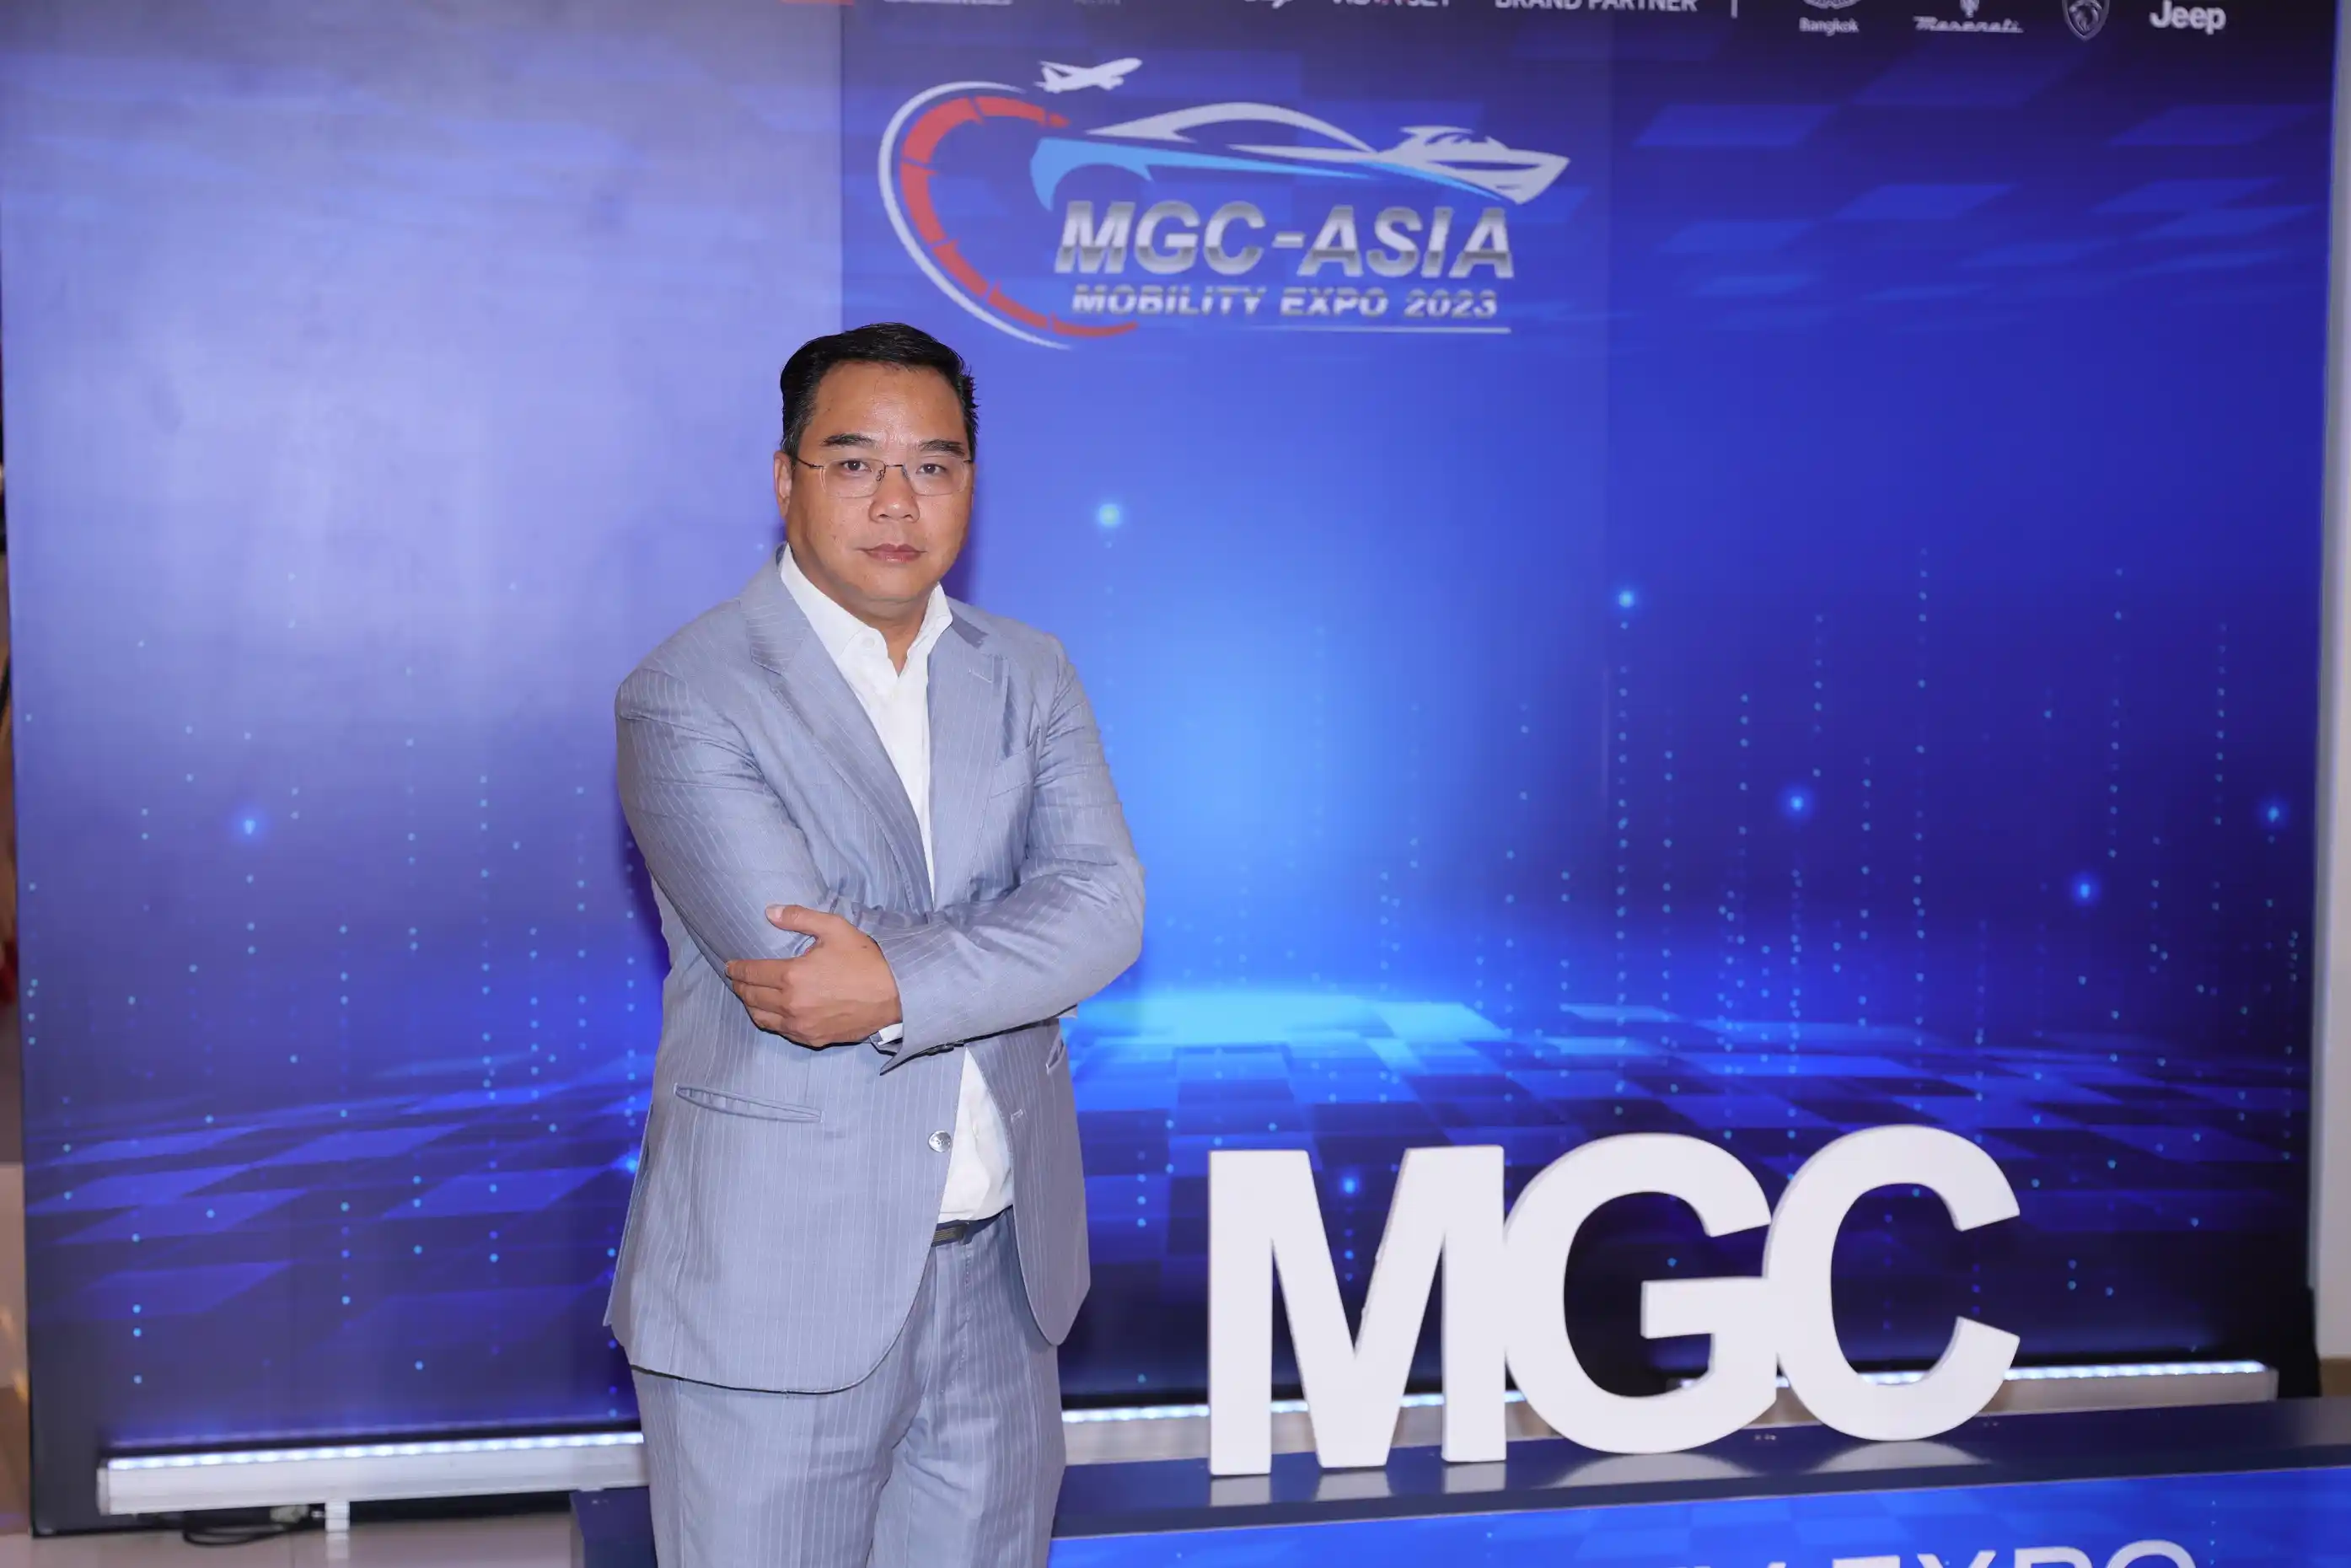 ข่าวรถวันนี้ : บมจ. มิลเลนเนียม กรุ๊ปฯ จัดมหกรรม ‘MGC-ASIA Mobility Expo 2023’